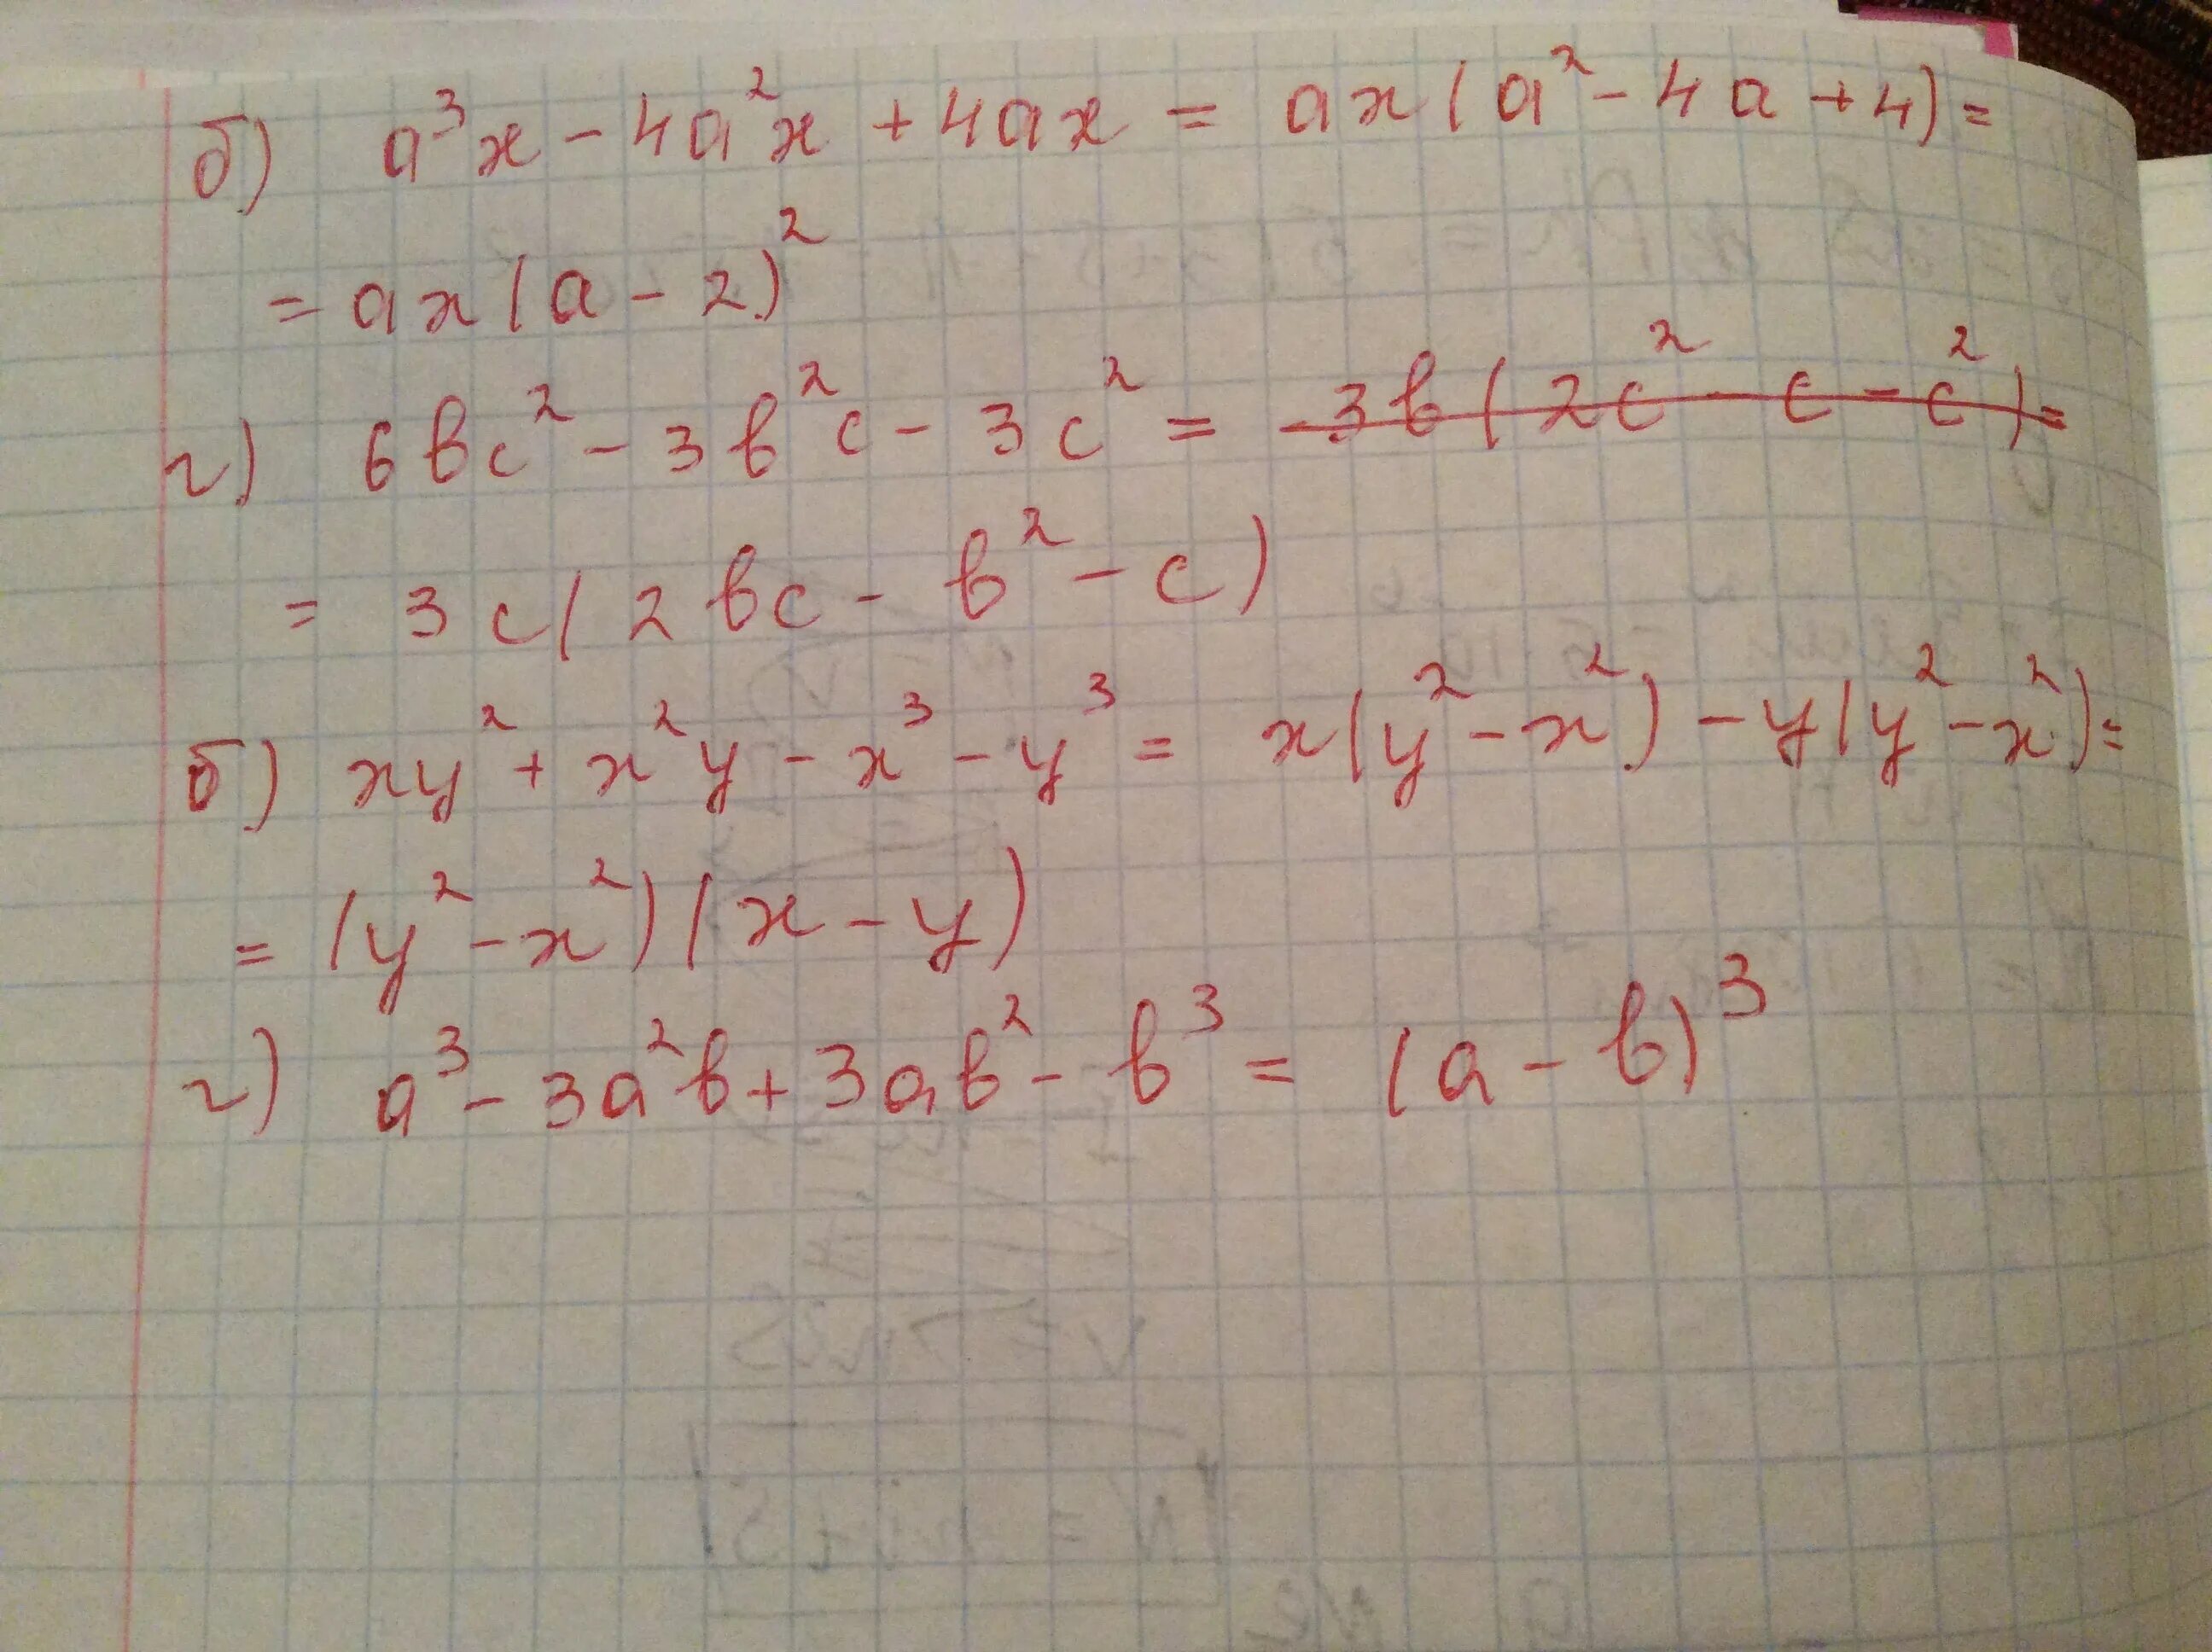 A*B*C 3x2y -0,5x3y2 2xy4. 2x^2-8 б 3/х-2. A2 4a 2 x2 AX 6 X три решения. Система x + 2y=1 x2 -XY-2x2=1. 3x 3y 9 0